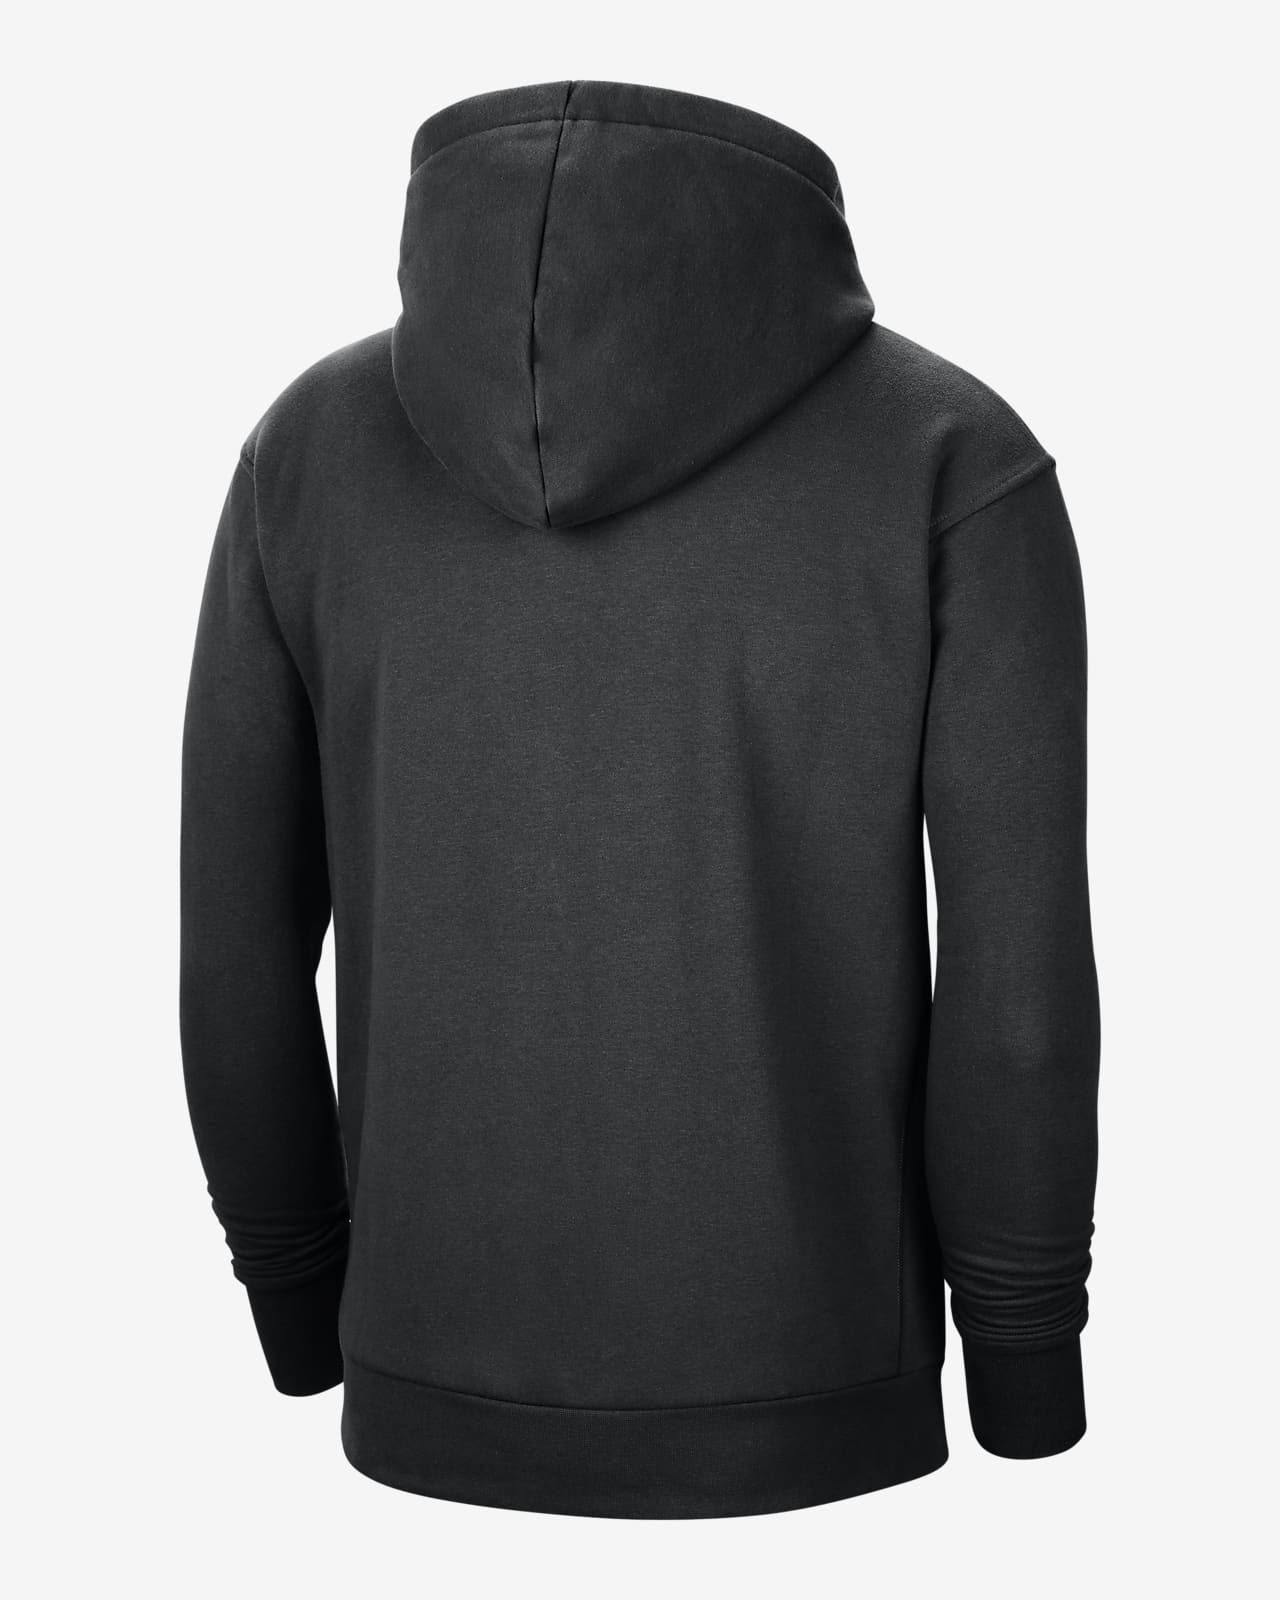 nike pullover hoodie men's black